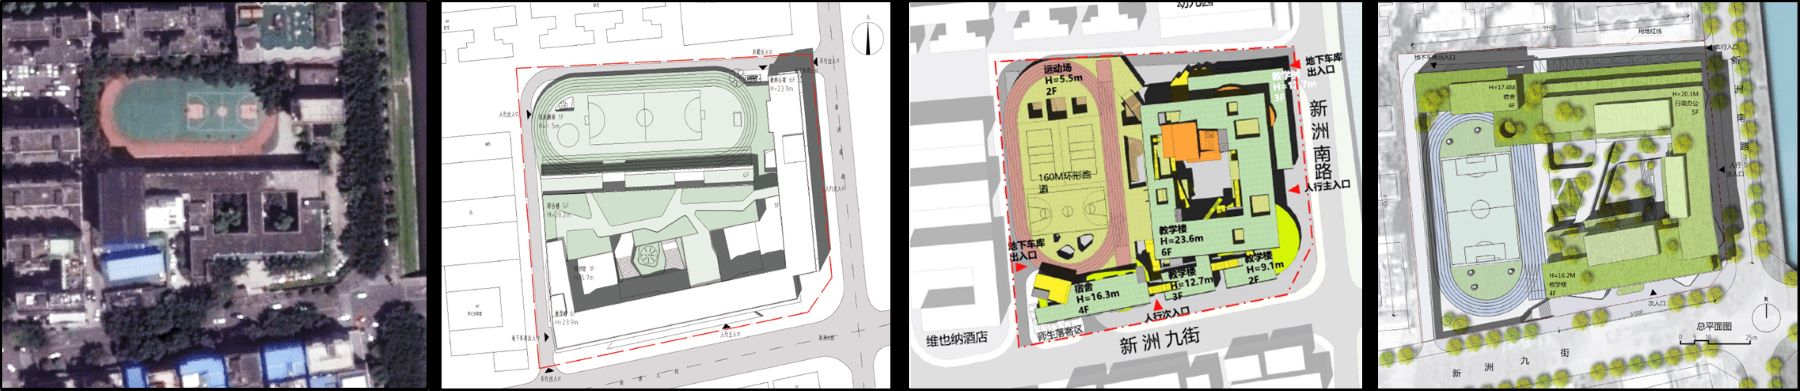 从左到右：2015场地卫星图、东意建筑中标案、局内设计竞赛提案、地劲建筑竞赛提案